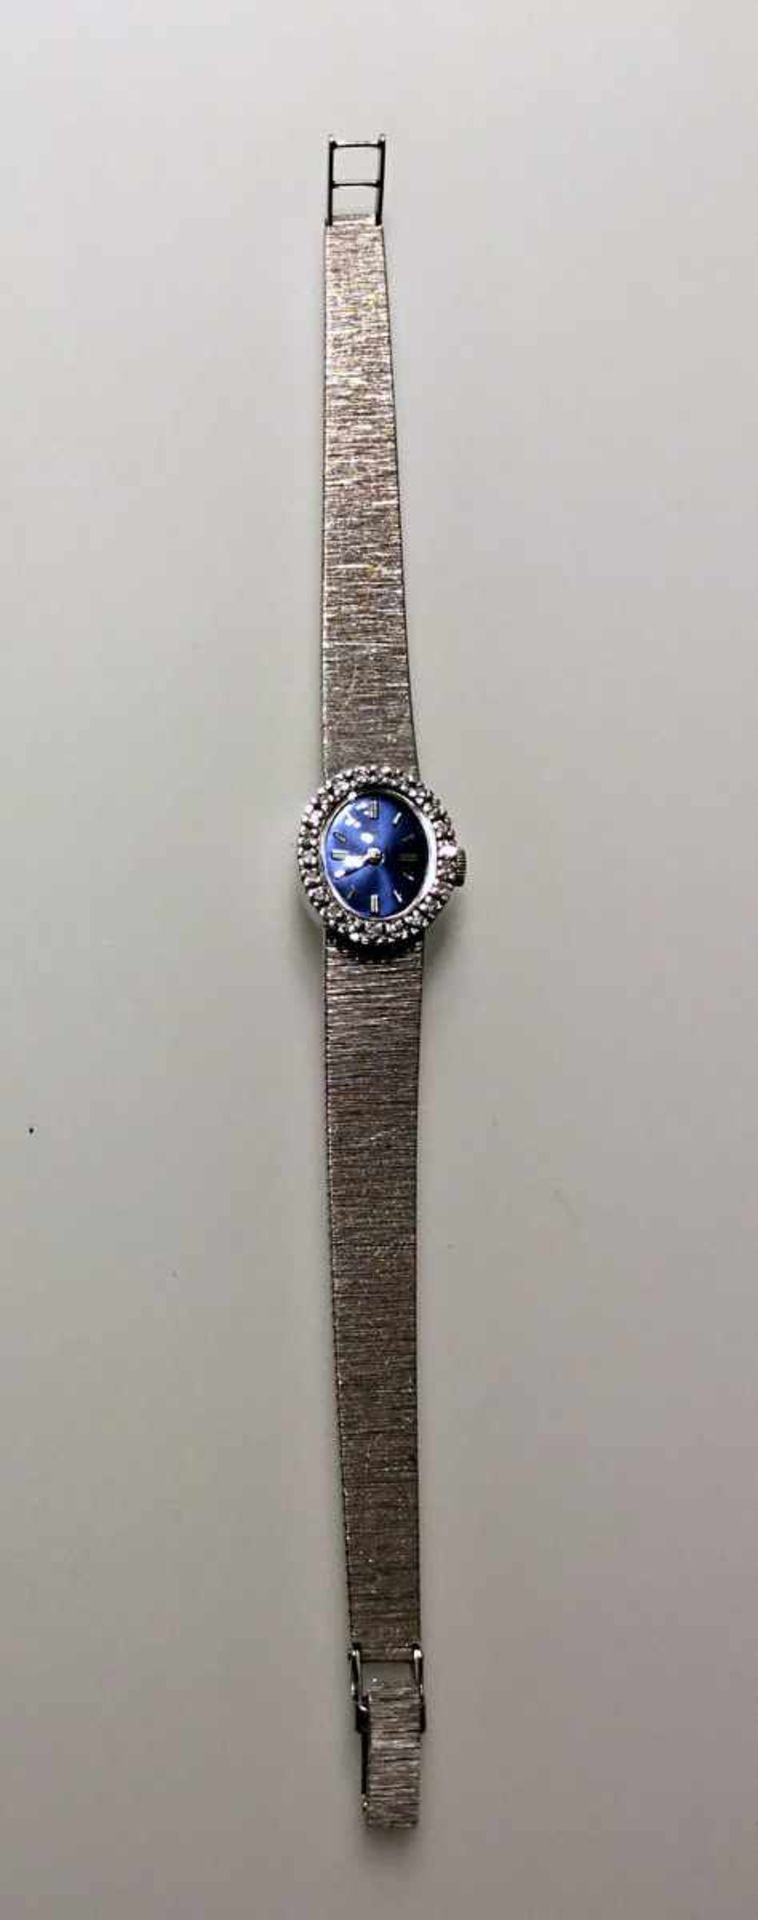 Damen Armbanduhr 18 kt. Weißgold mit kleine Diamantkranz. Gangbar, 70er Jahre. 22 g